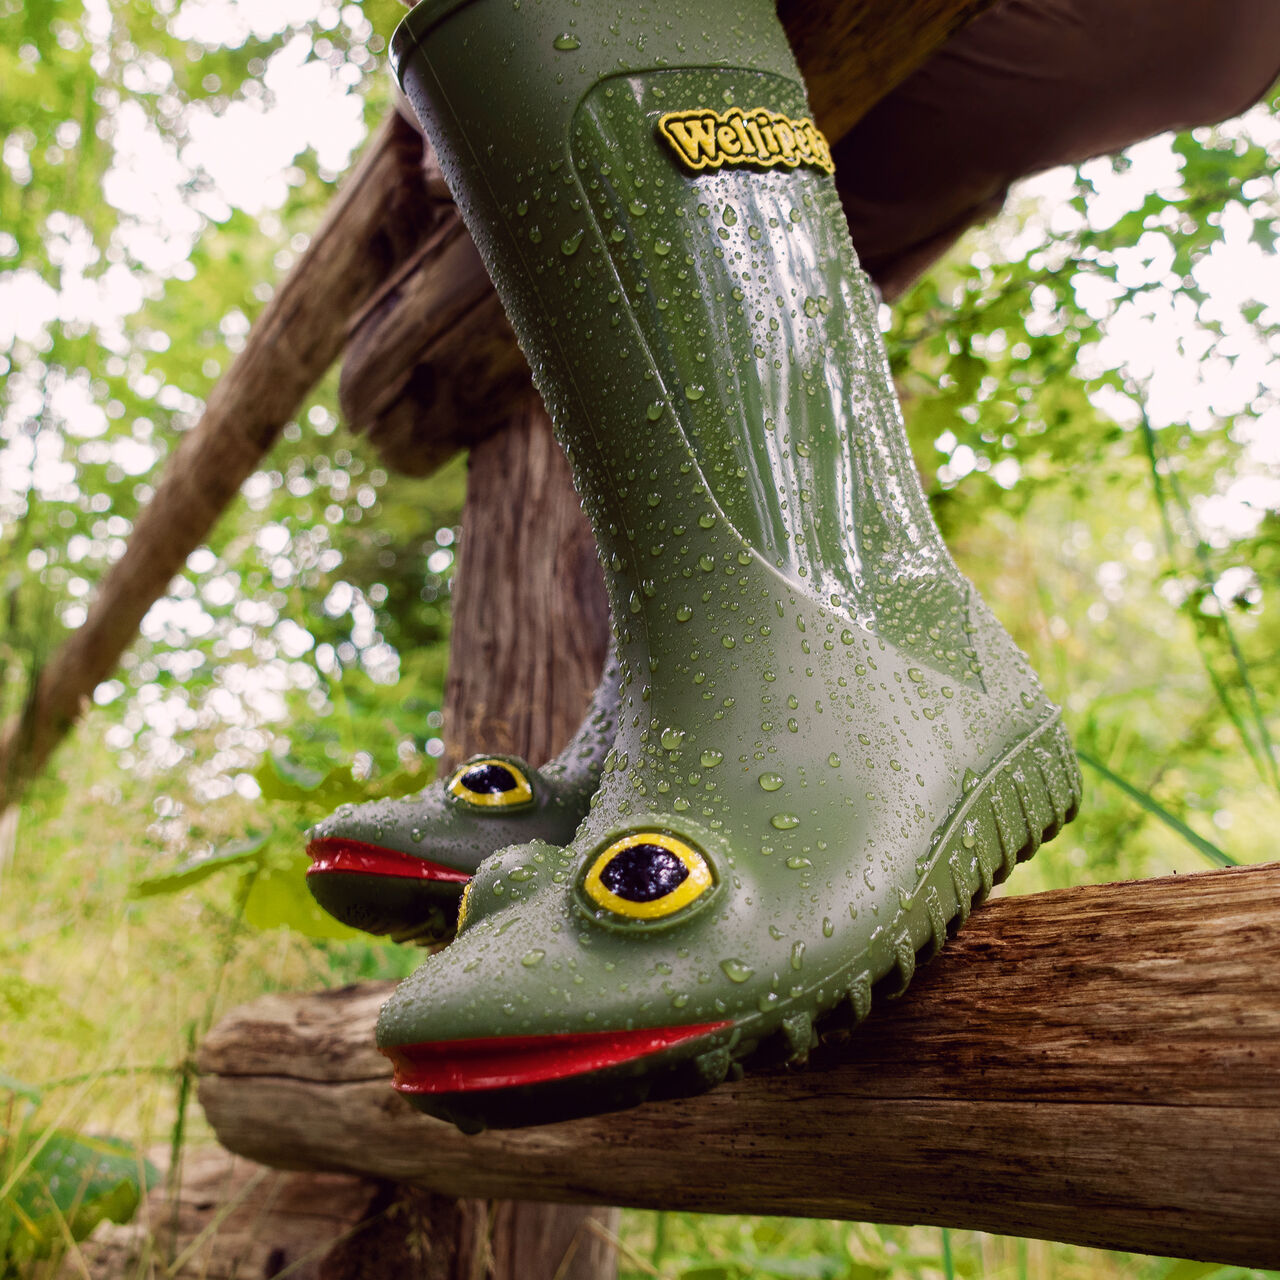 Frog boots rust как получить фото 18